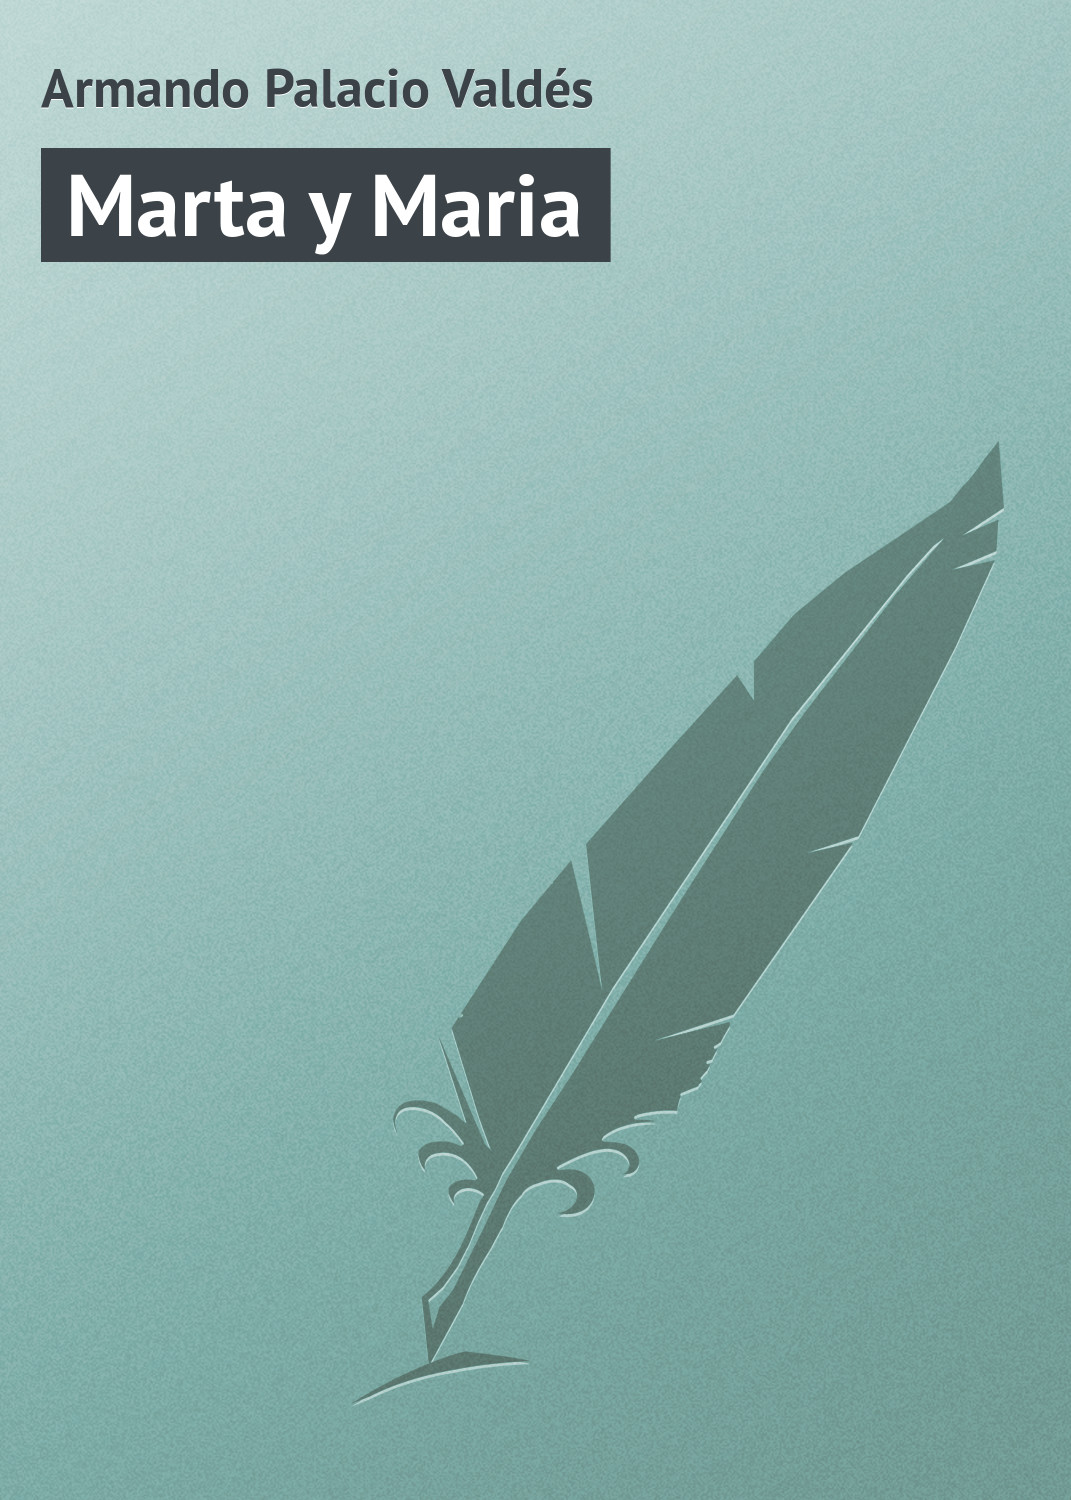 Книга Marta y Maria из серии , созданная Armando Palacio, может относится к жанру Зарубежная старинная литература, Зарубежная классика. Стоимость электронной книги Marta y Maria с идентификатором 21107574 составляет 5.99 руб.